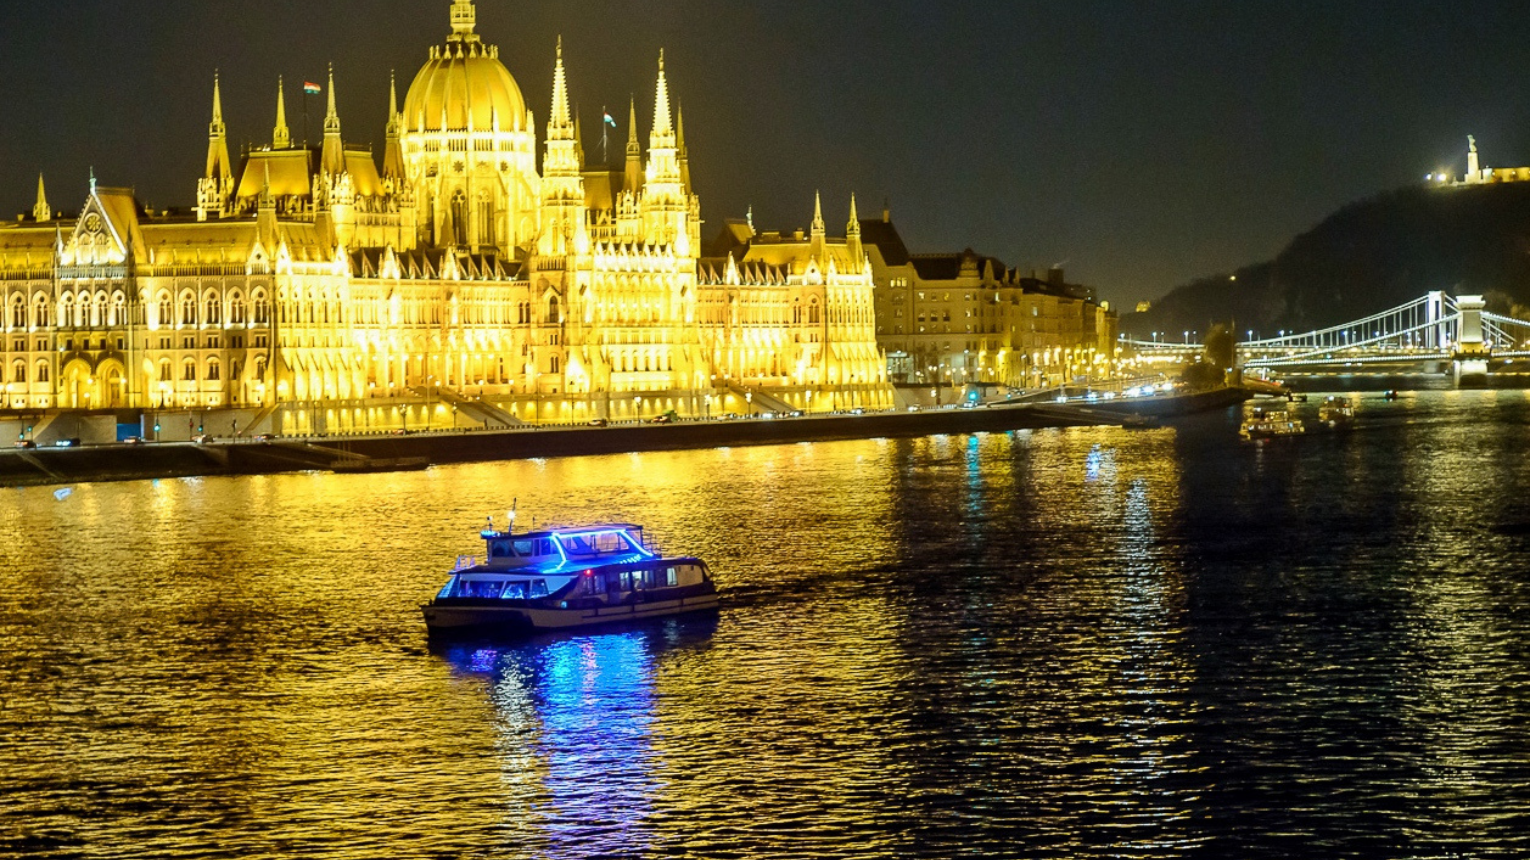 Hajós vacsora Budapesten!Romantikus környezet, élő zenei előadás! 8